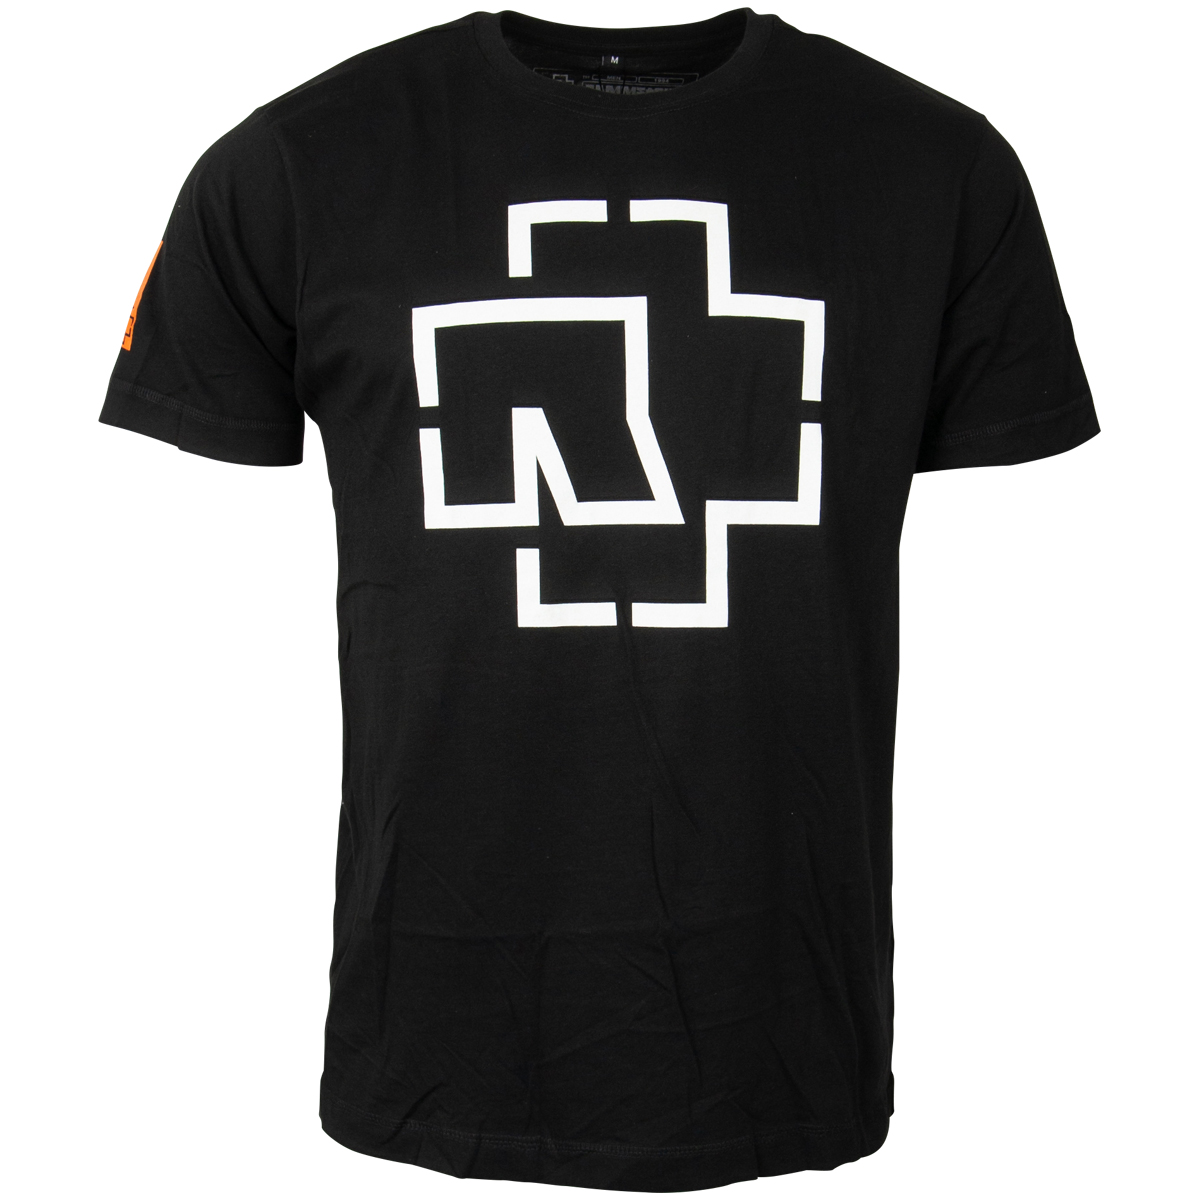 Rammstein - T-Shirt Logo - schwarz